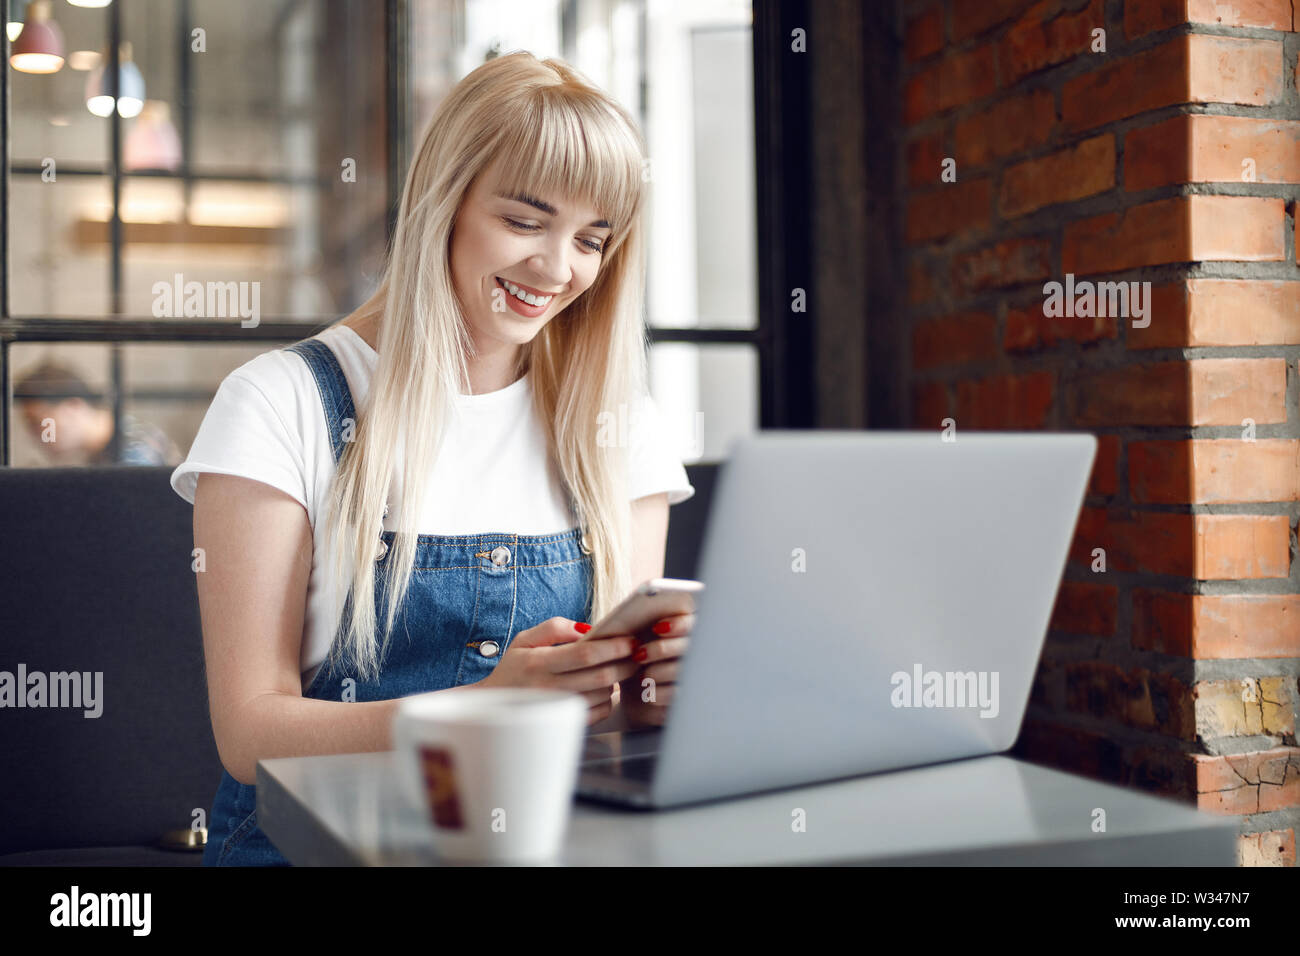 Beautiful woman using mobile phone and laptop while sitting at cafe. Jeune fille au café à boire du café et à l'aide d'achat en ligne pour smartphone Banque D'Images